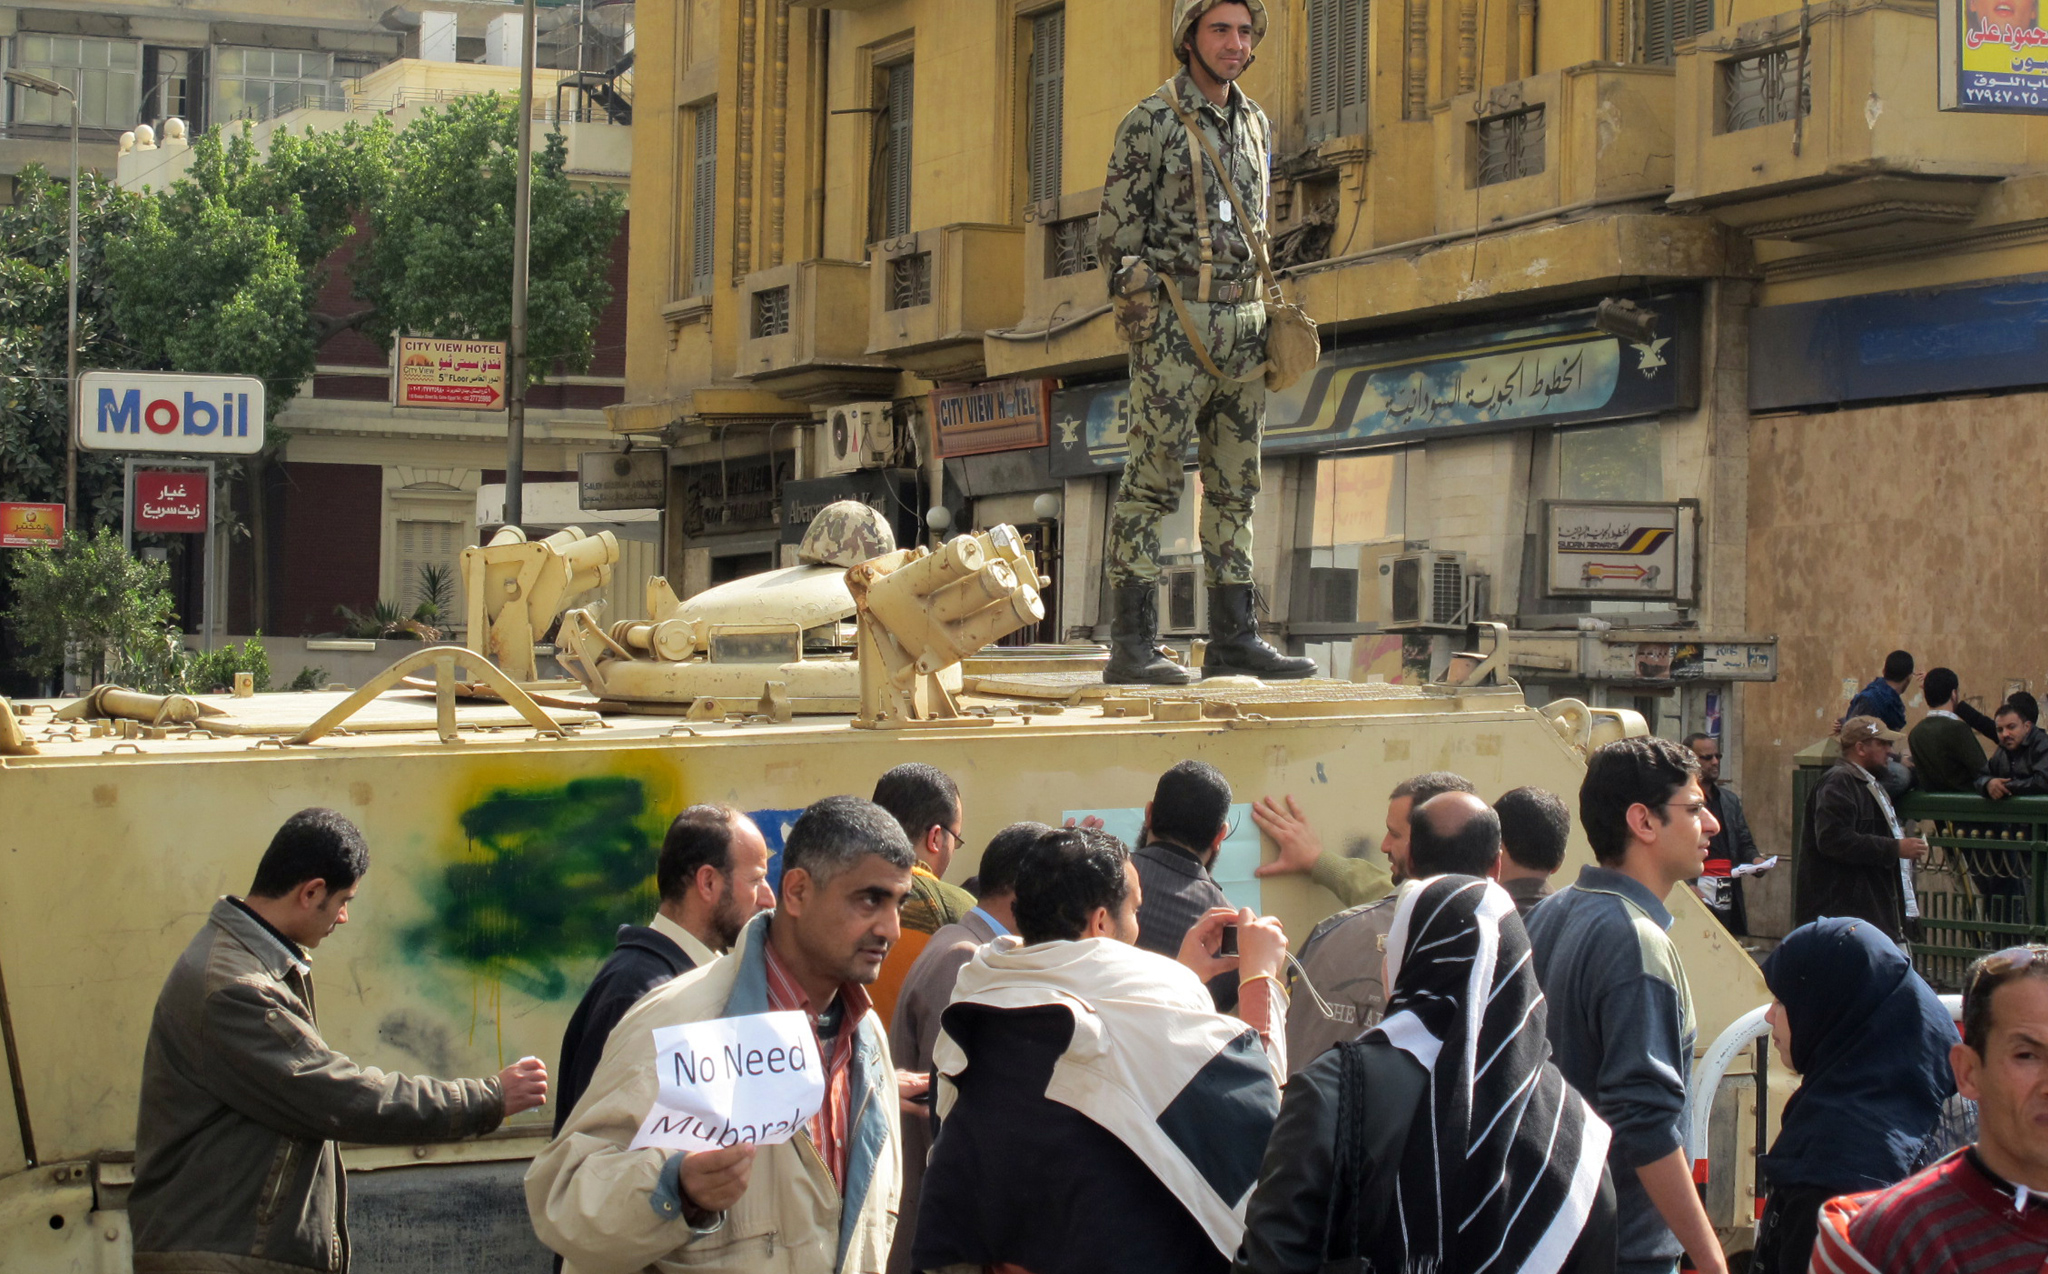 Les manifestants se réunissent dans une ambiance bon enfant, toujours sous le regard amusé de l'armée égyptienne. <br>
(Crédit photo : Marc Daou)
